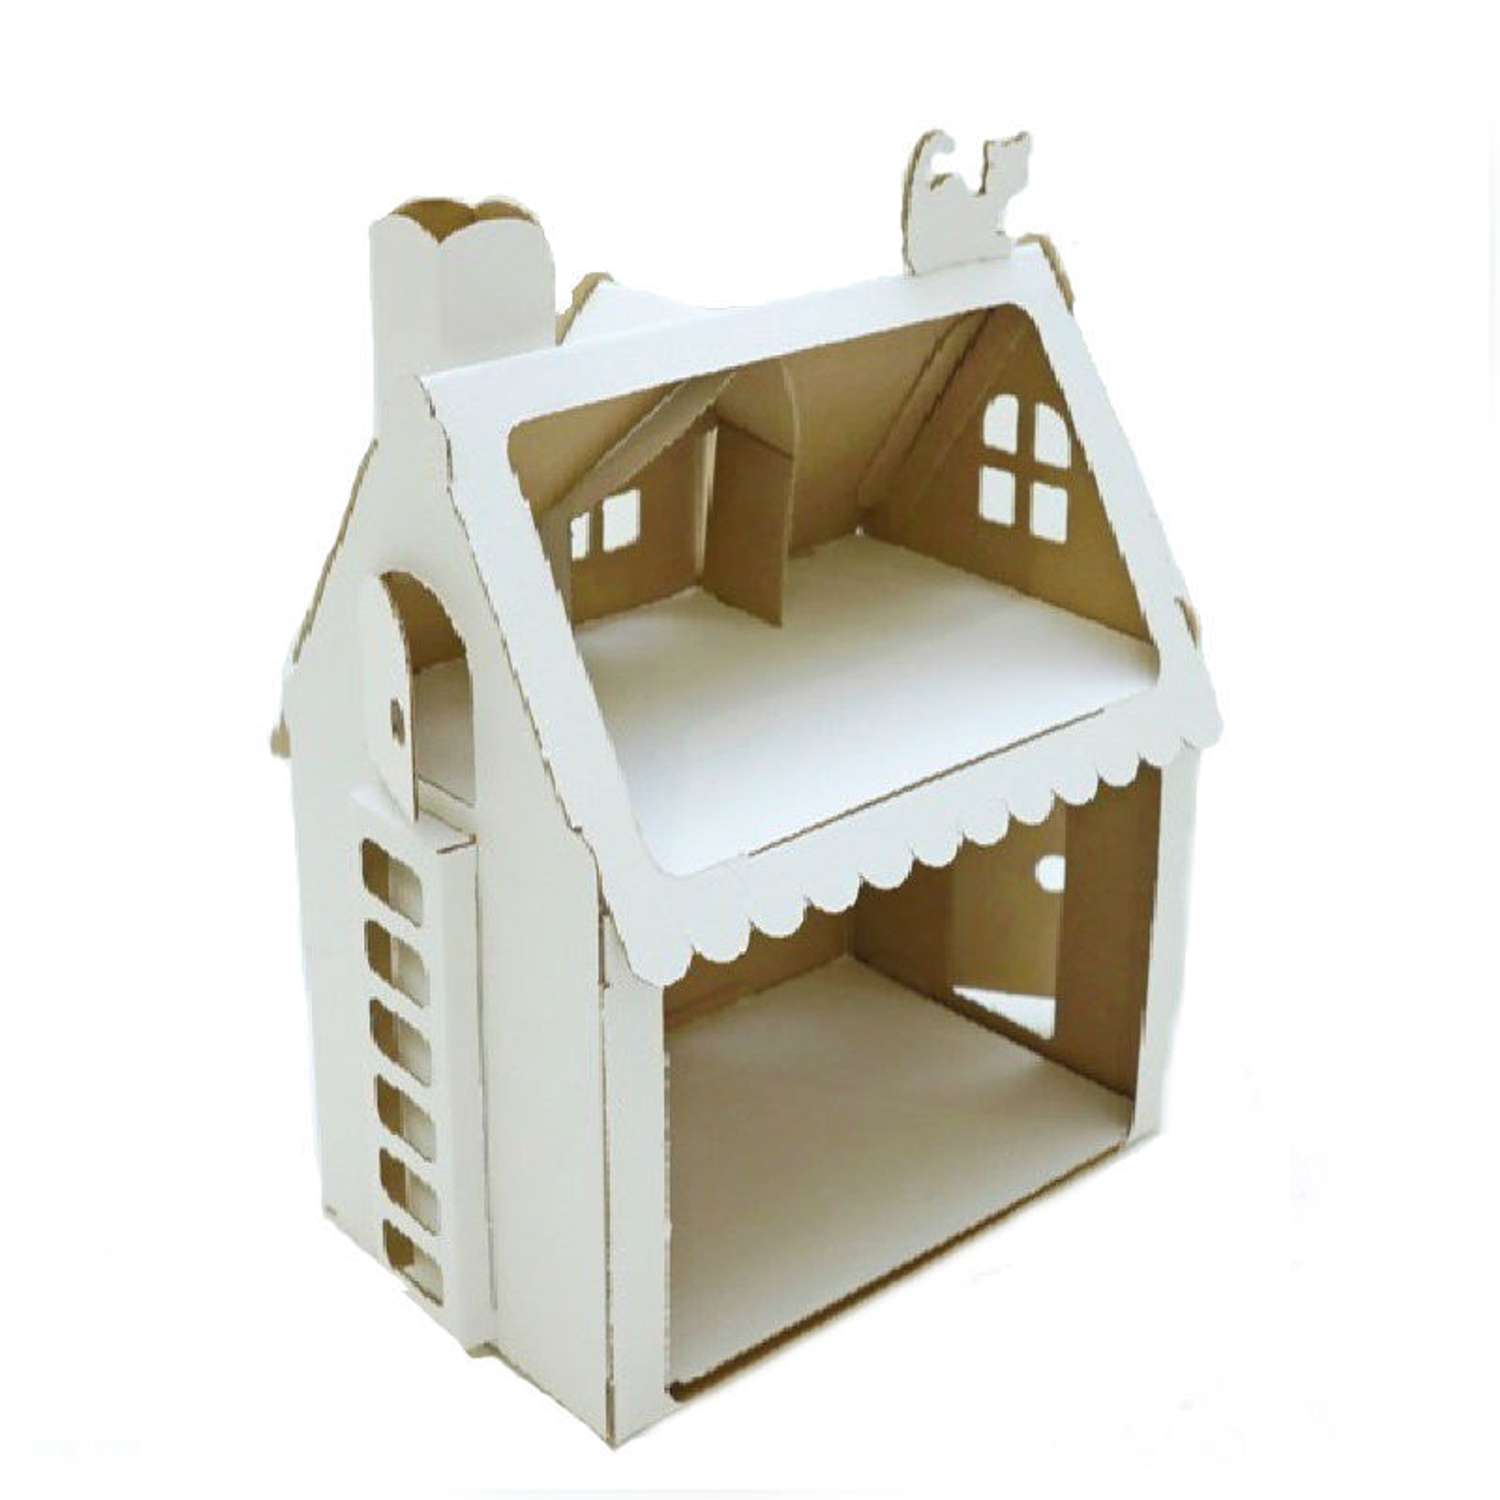 Уютный домик из картона: мастерим вместе с детьми